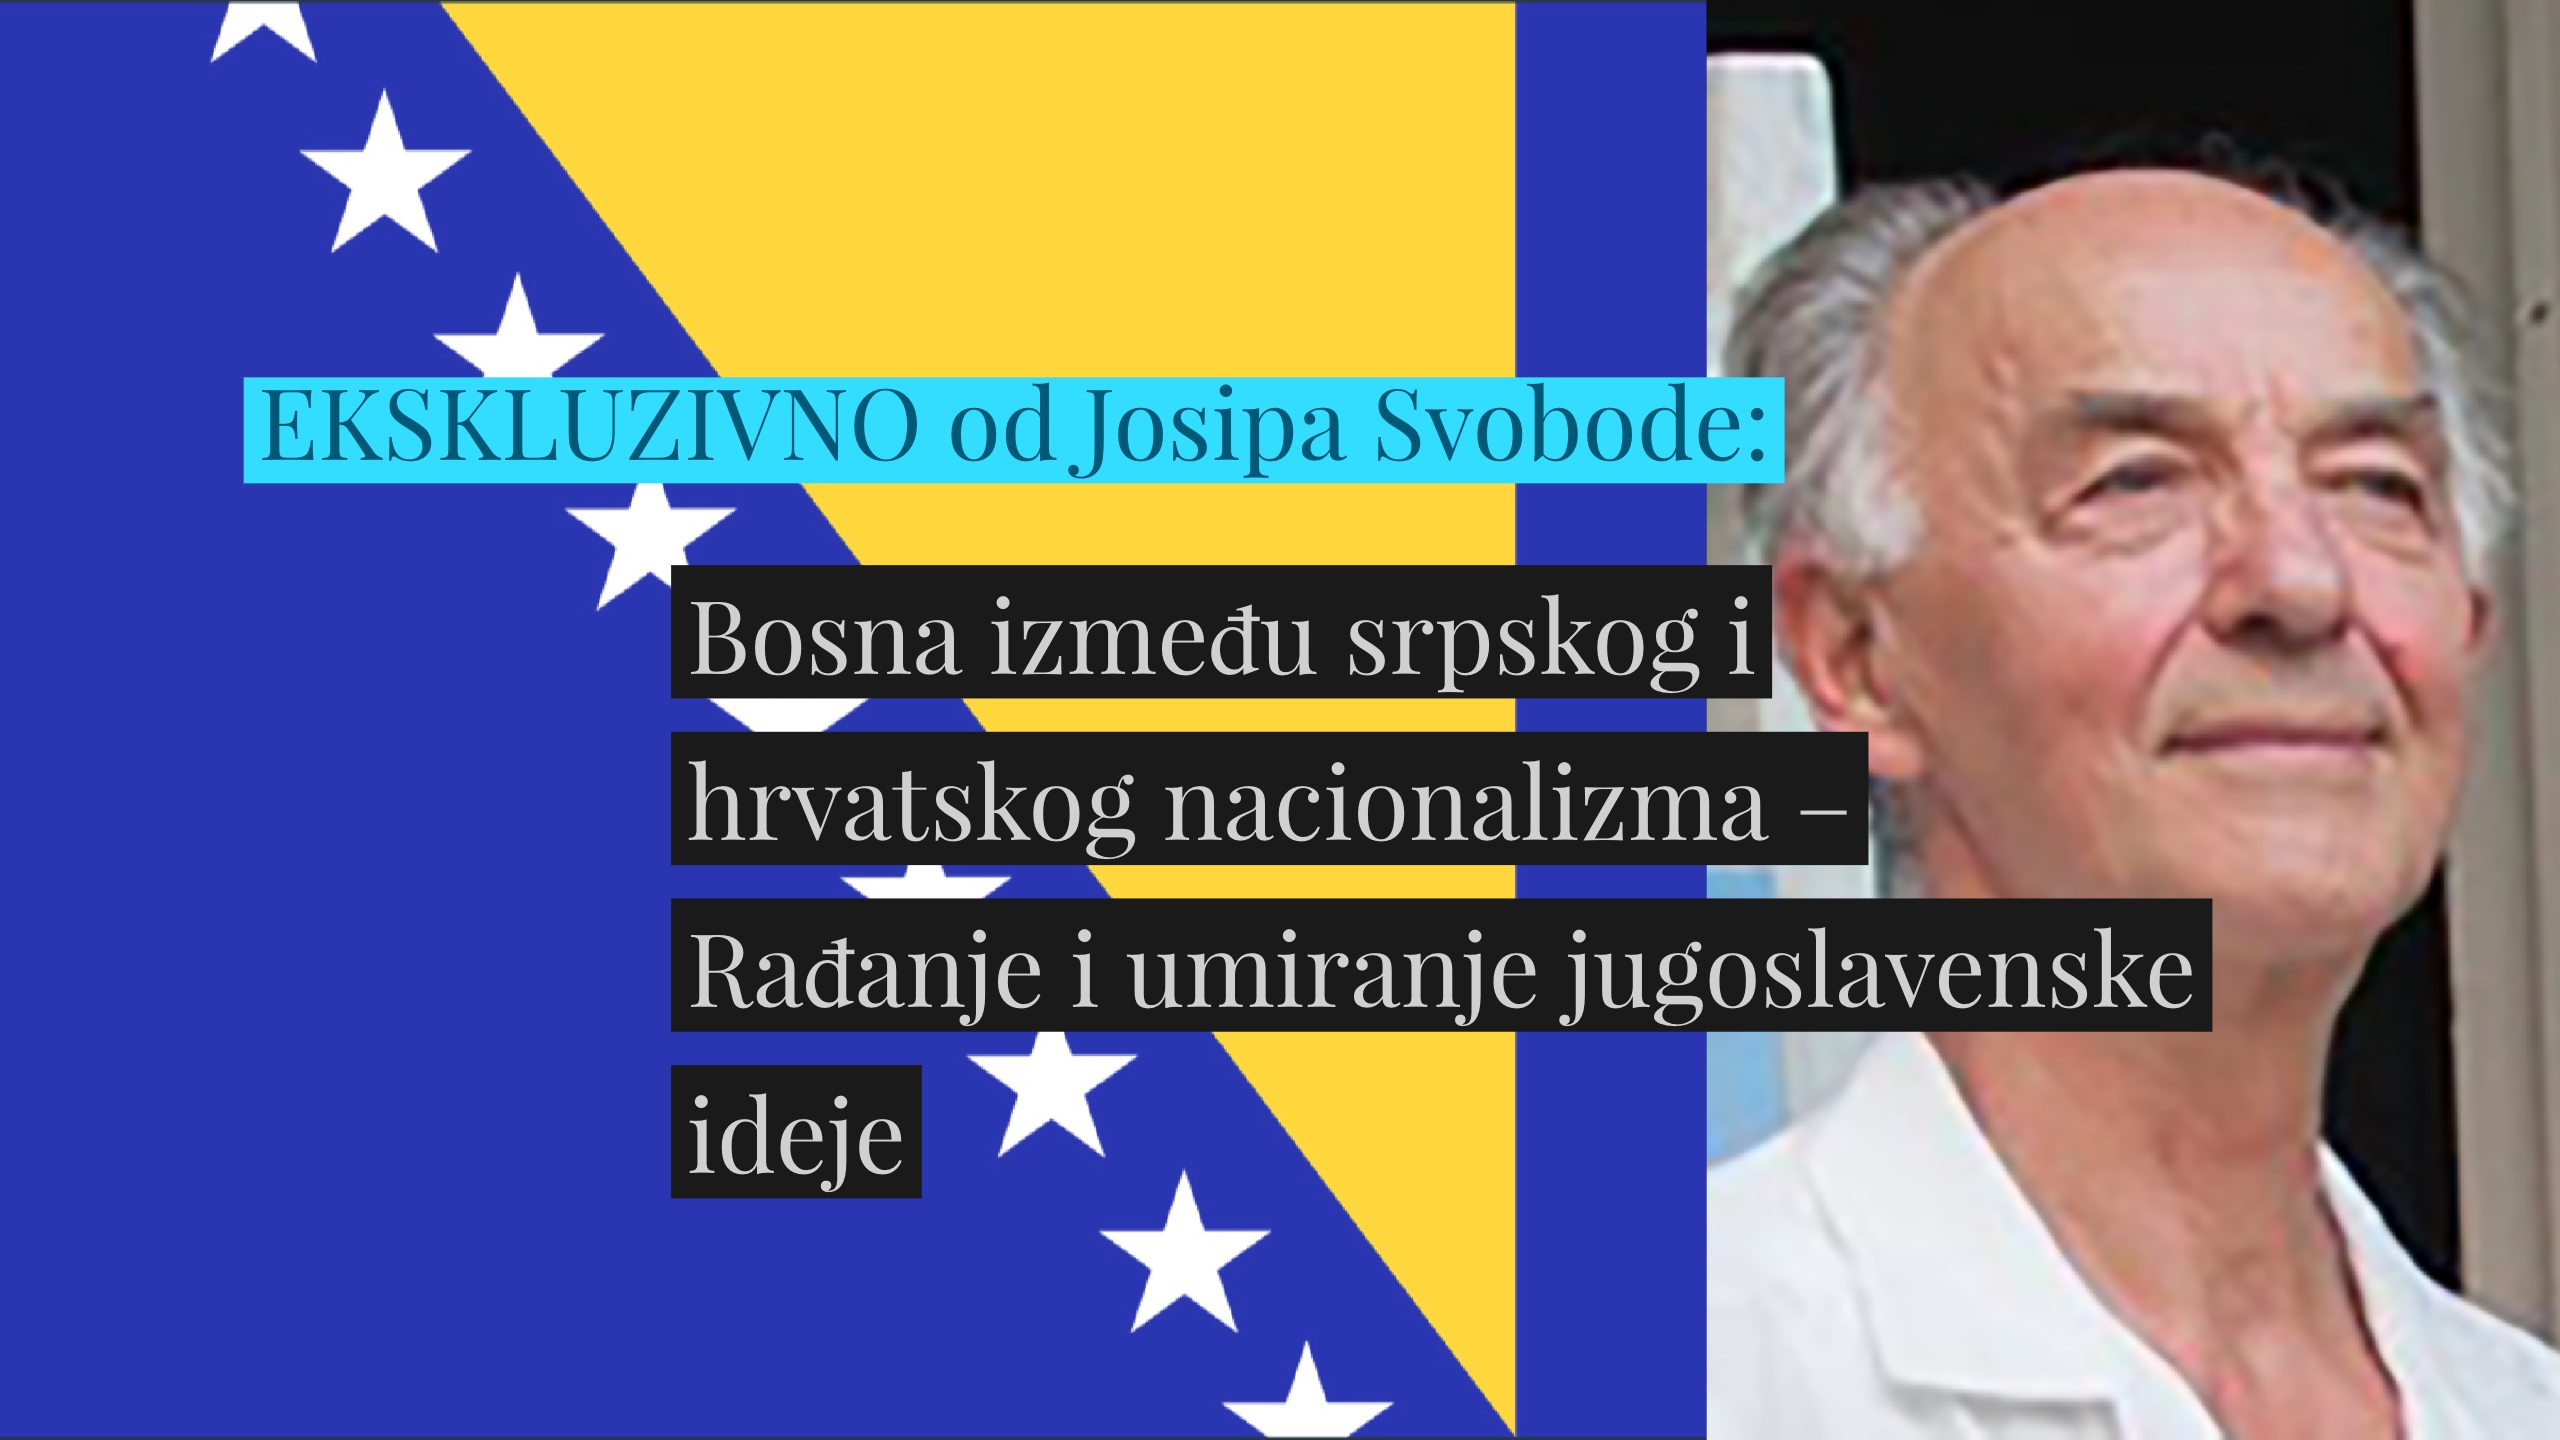 Josip Svoboda: Bosna između srpskog i hrvatskog nacionalizma